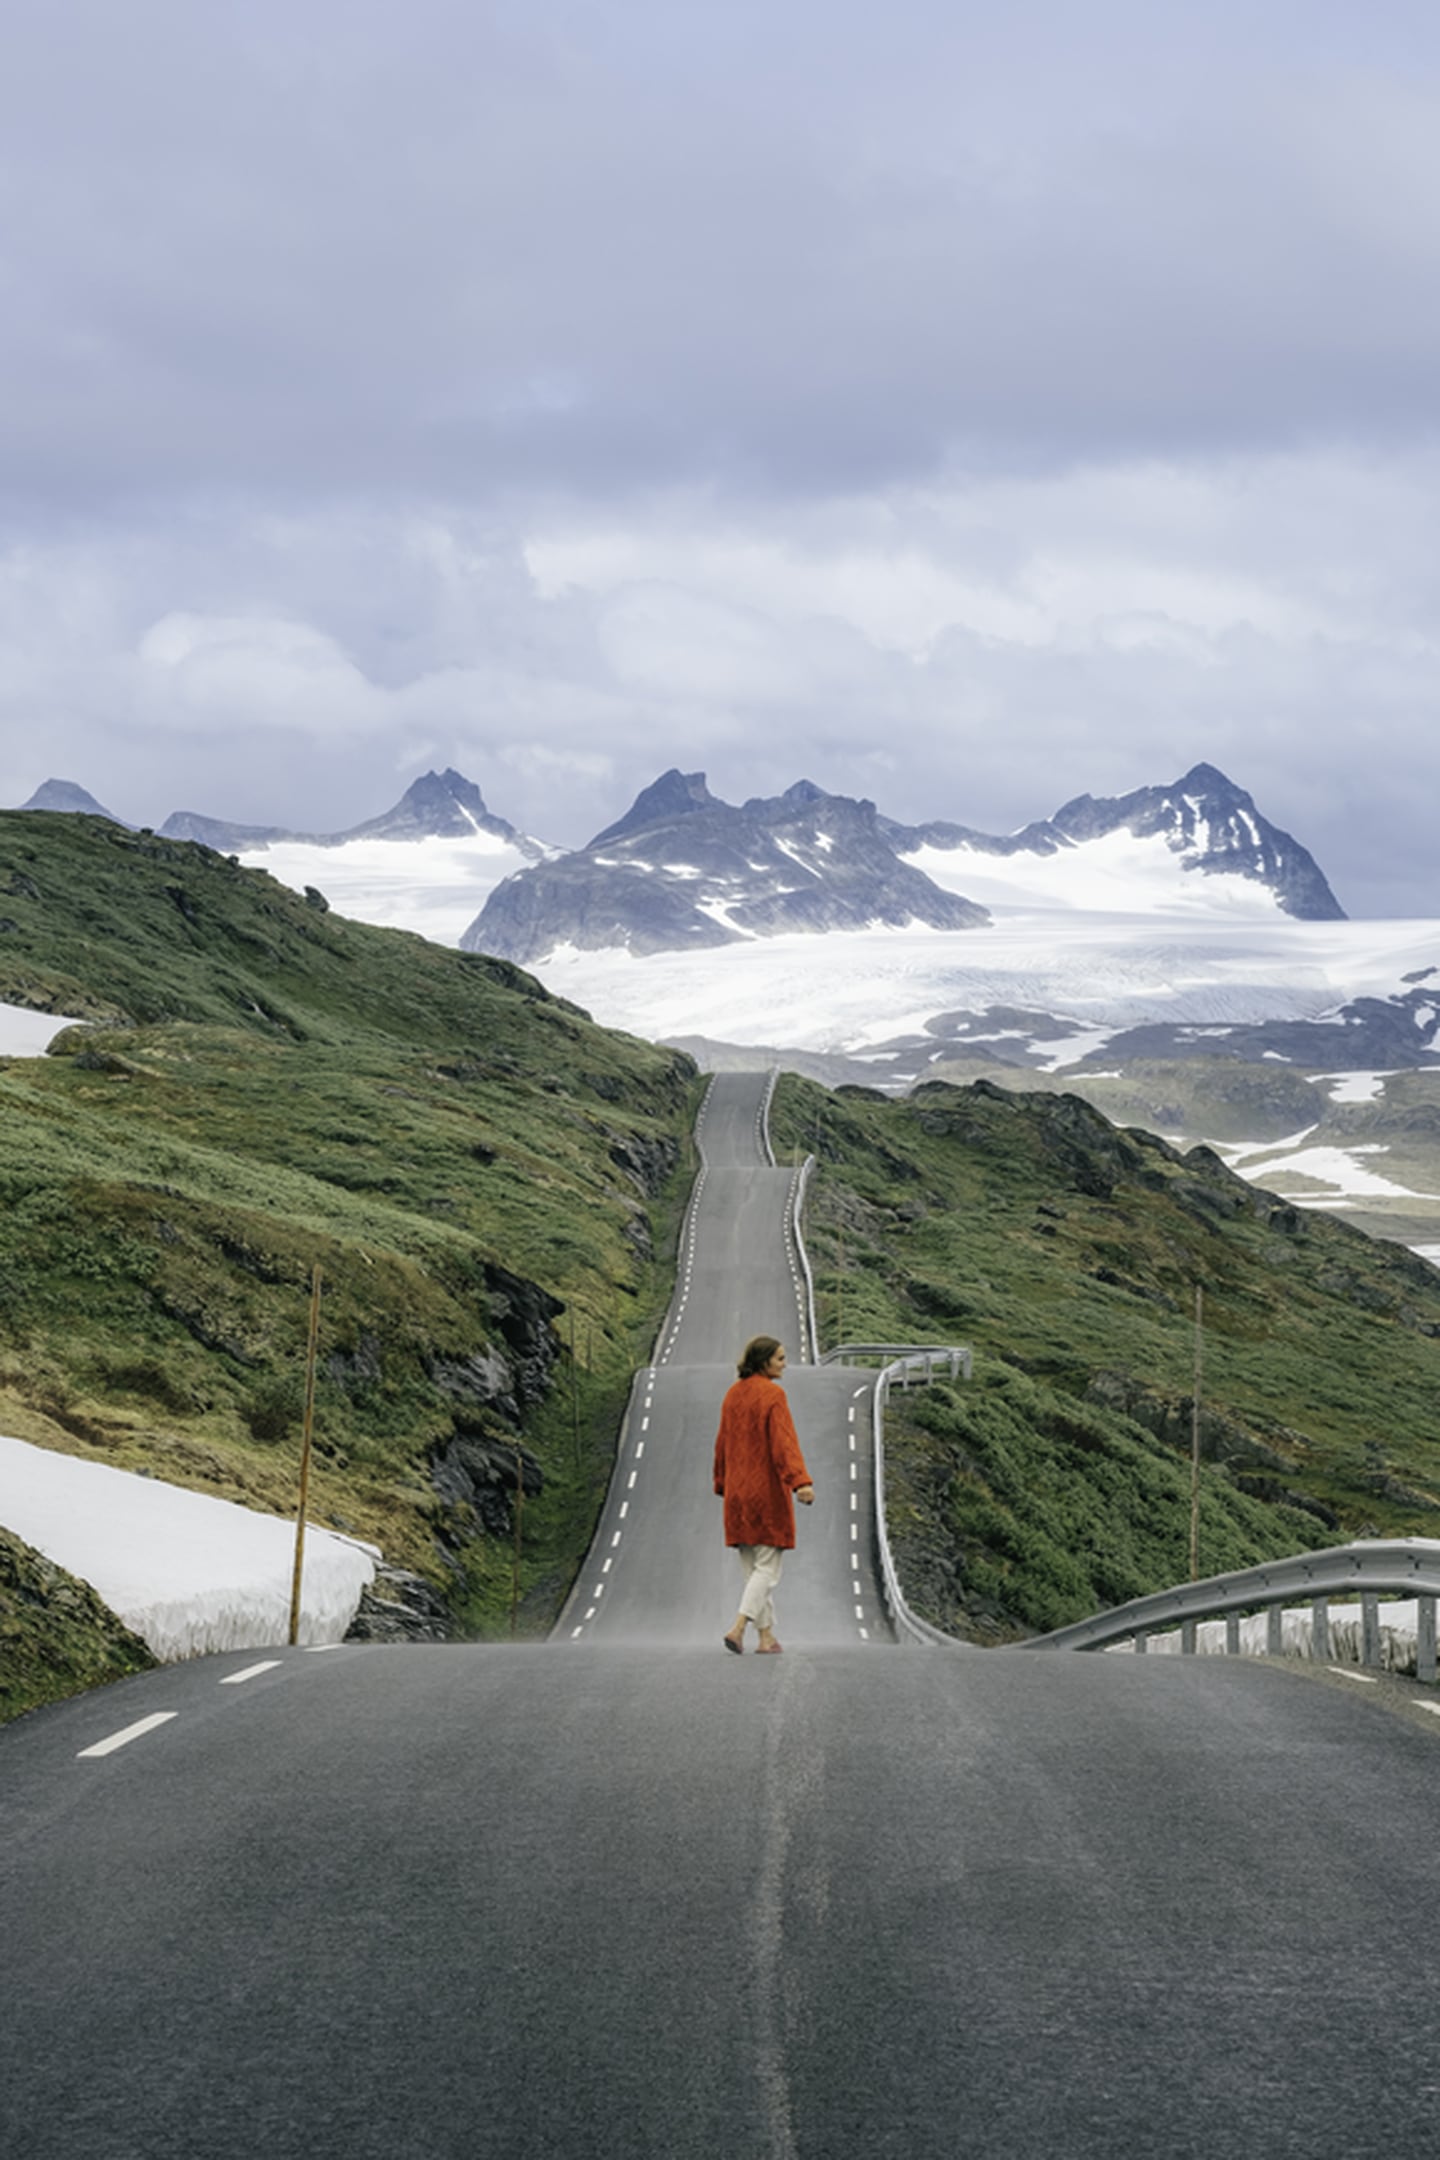 På Instagram deler Helene Myhre Østervold spektakulære bilder fra turene sine i Norge, under profilen @helenemoo. Nå har 23-åringen skrevet reiseboka «Tur-retur Norge», som akkurat nå ligger øverst på bestselgerlista for sakprosa.